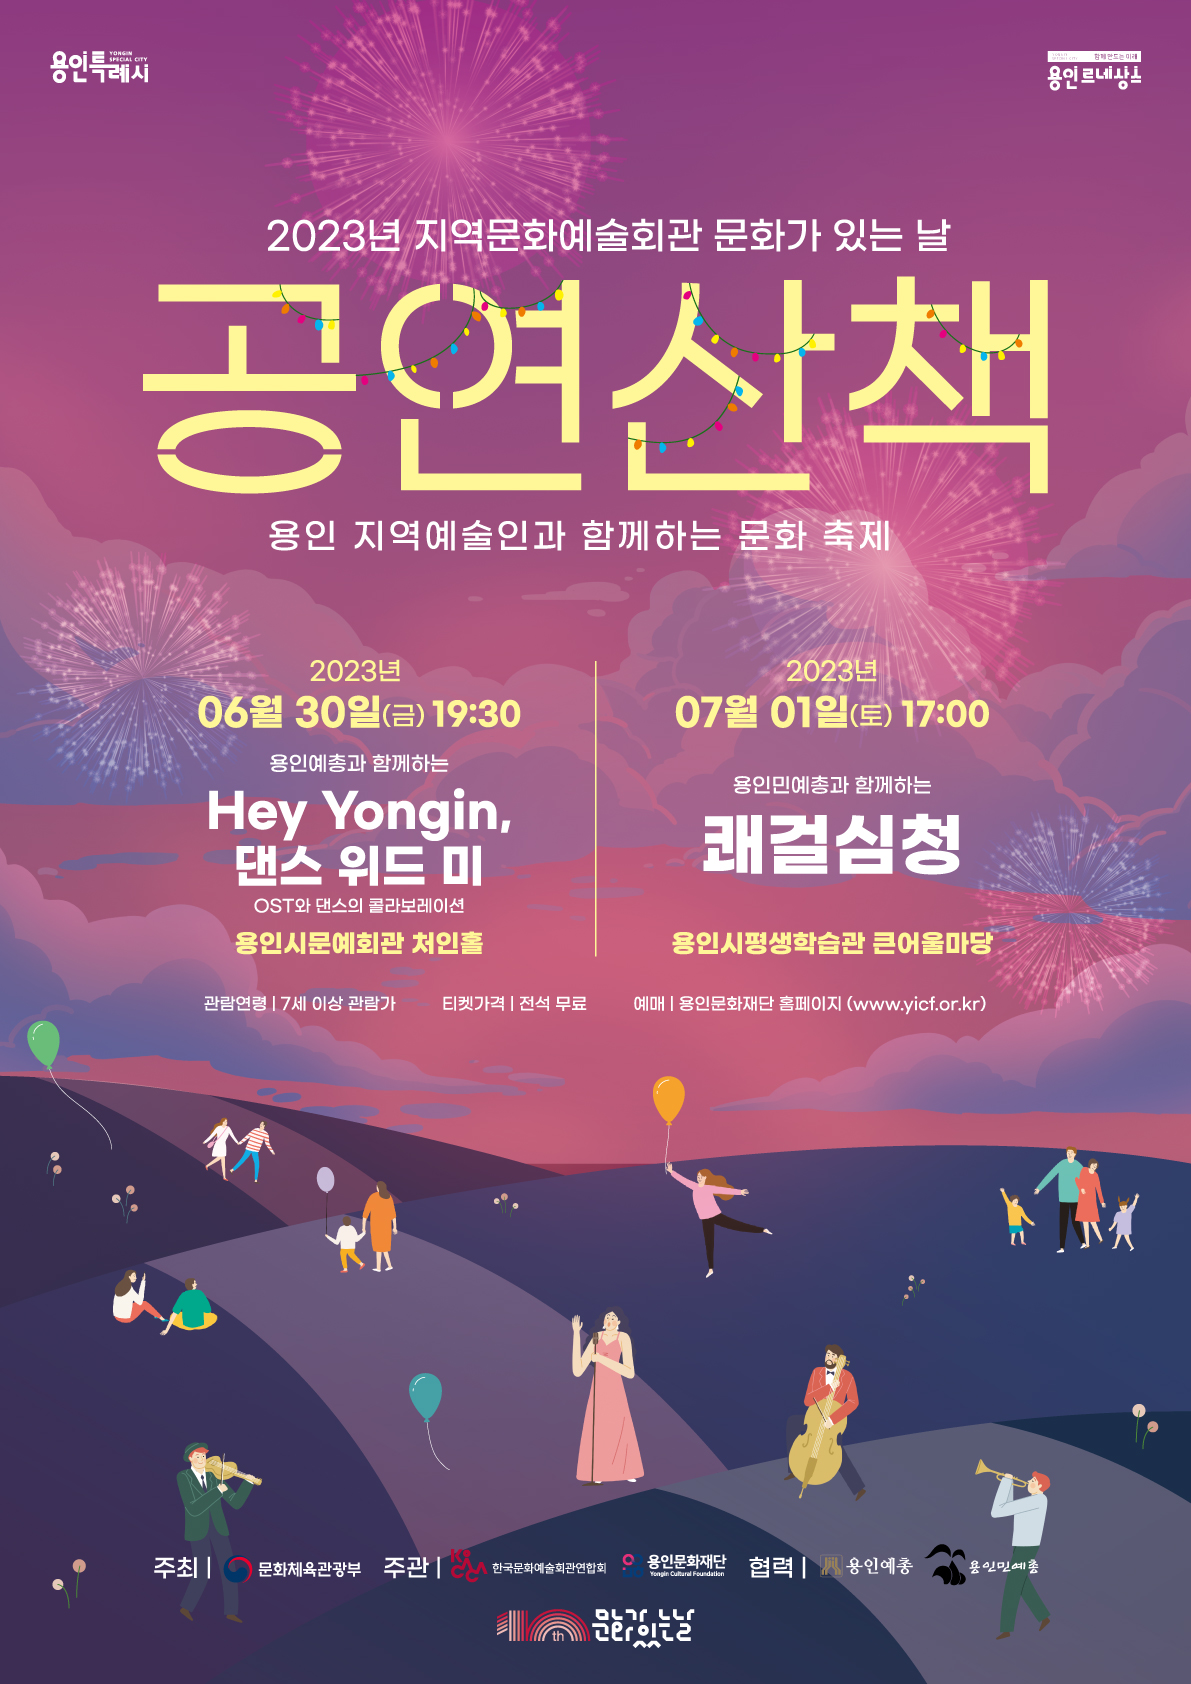 문화가 있는 날 - 공연산책 <Hey Yongin, 댄스 위드 미> 홍보포스터